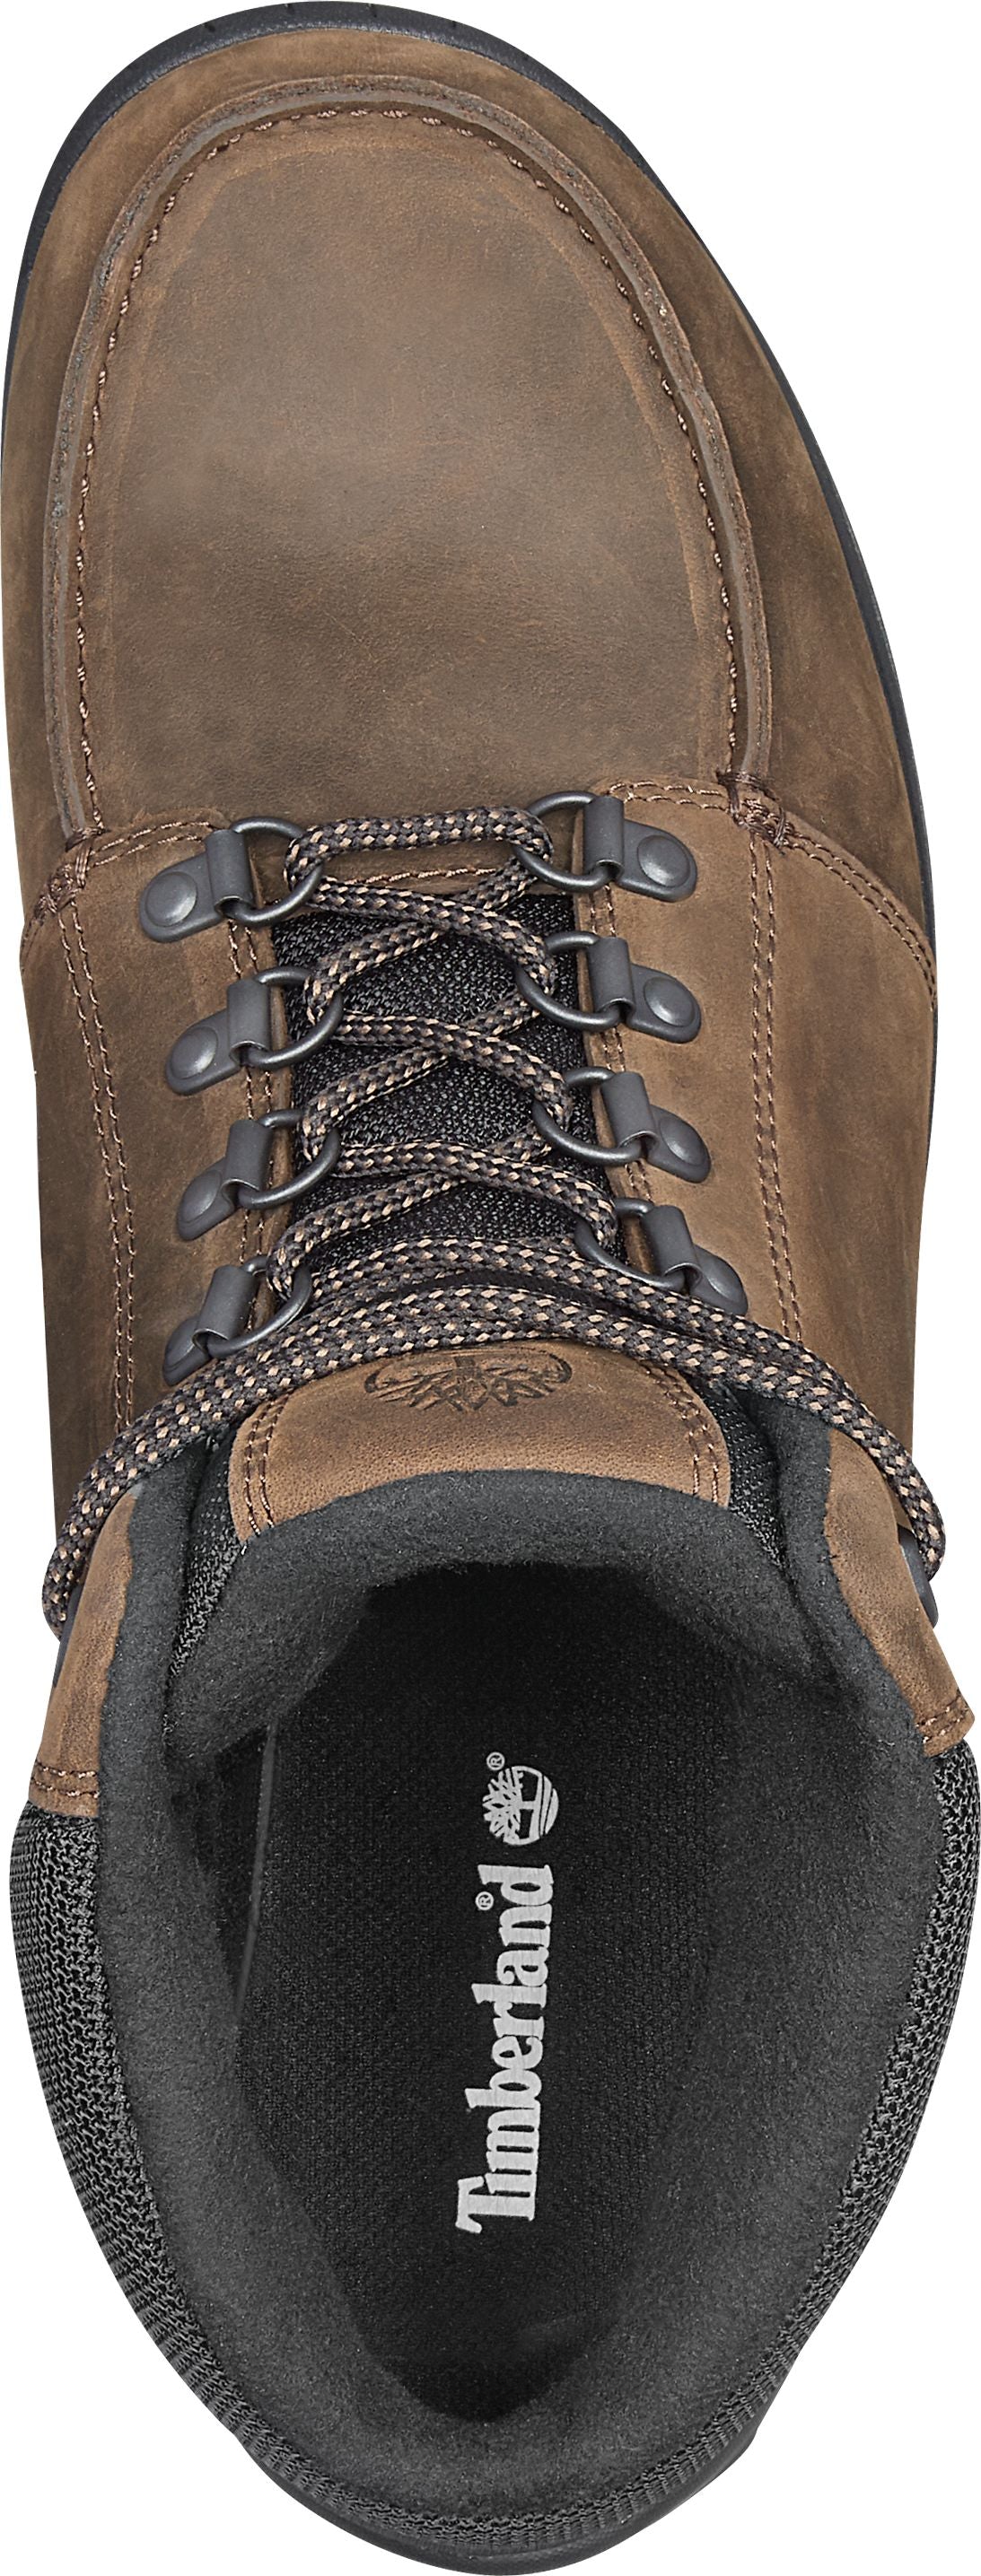 Timberland Boots Snowblades 400g Dark Brown